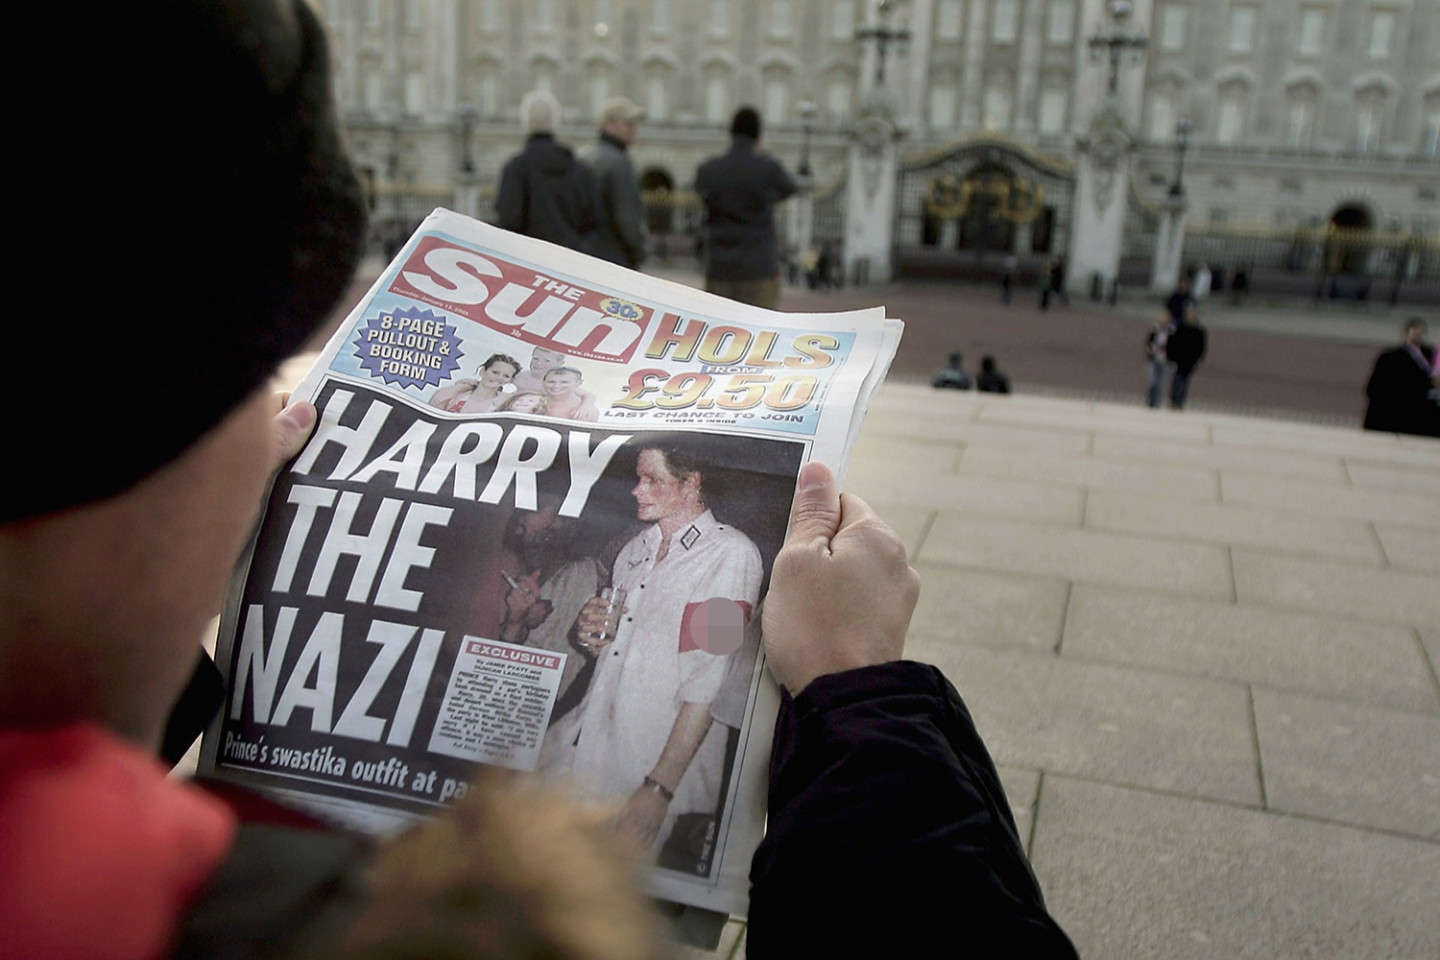 Выпуск газеты с фотографиями принца Гарри в военном костюме времен нацистской Германии, 2005 год